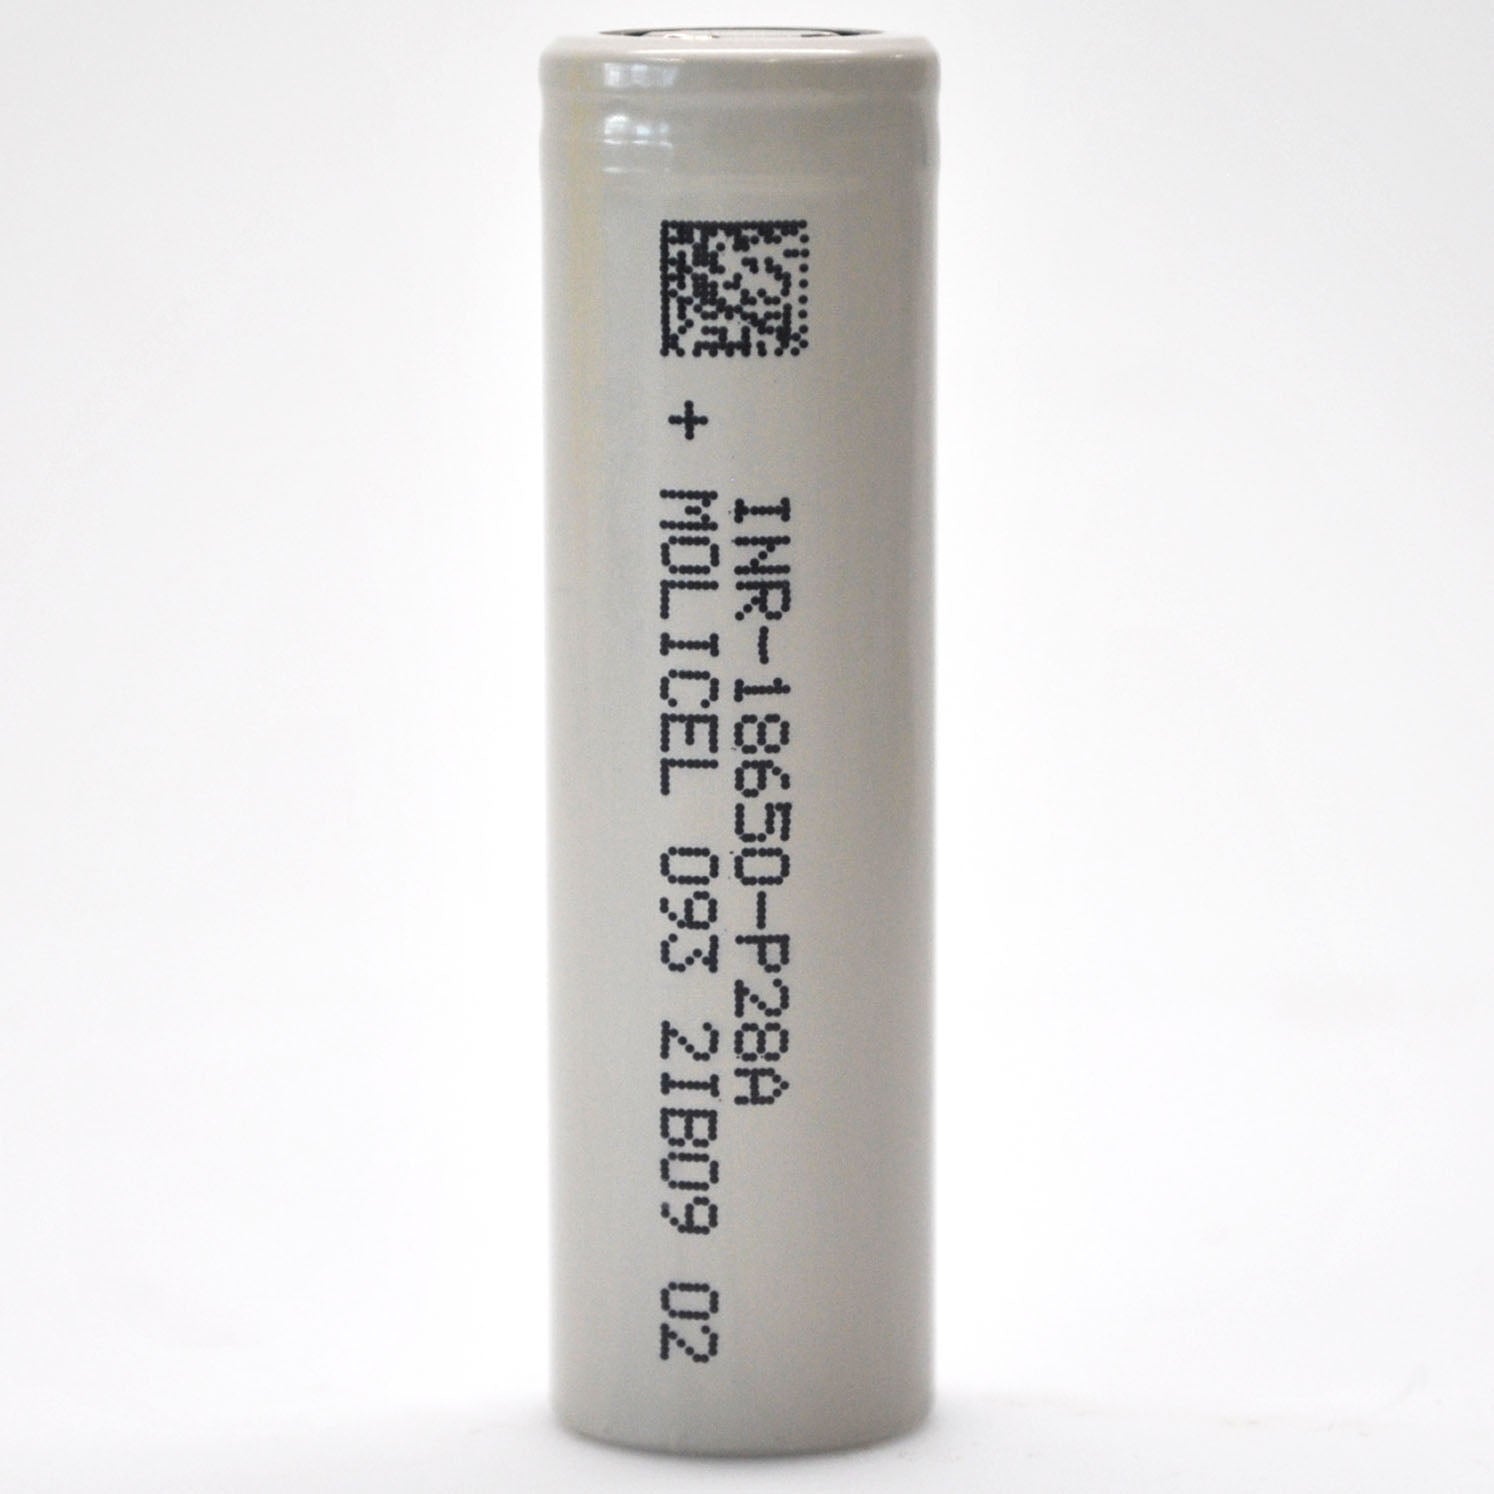 mild Karakteriseren Spuug uit Molicel/NPE INR-18650-P28A 35A 2800mAh Flat Top 18650 Battery - Author –  Liion Wholesale Batteries